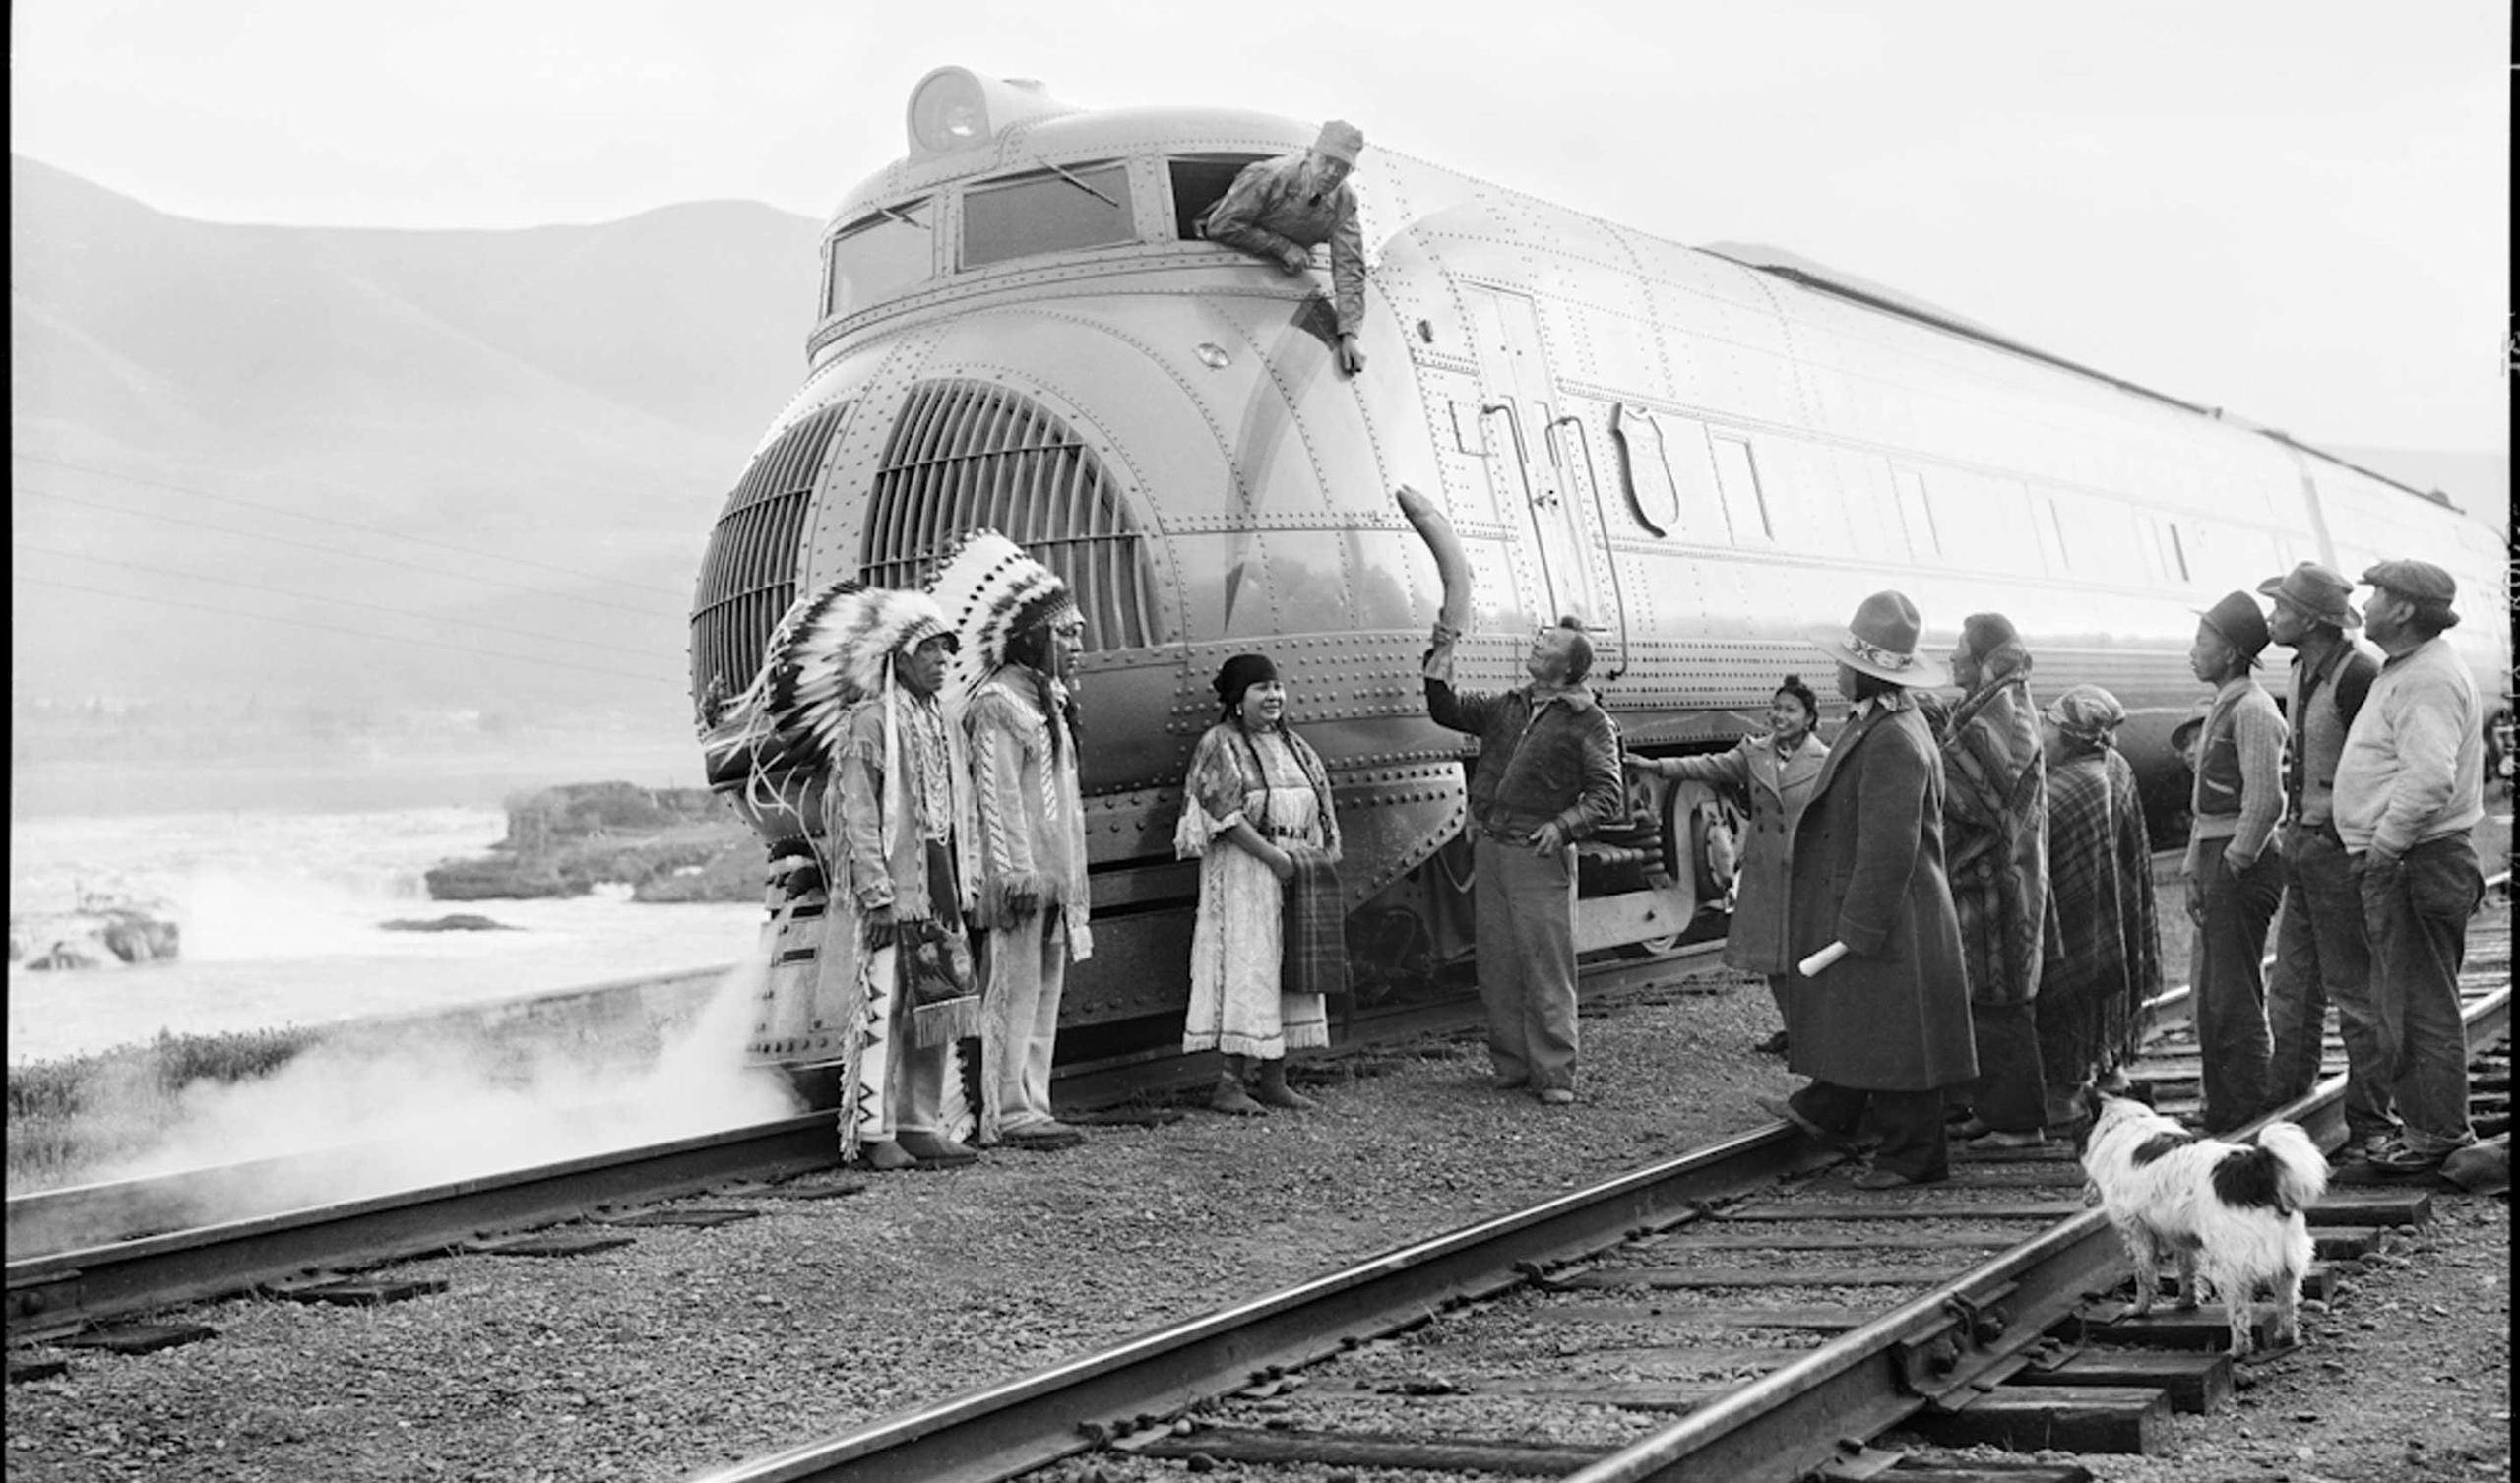 Индейцы дарят церемониального лосося машинисту поезда, Орегон, США, 1940 год.